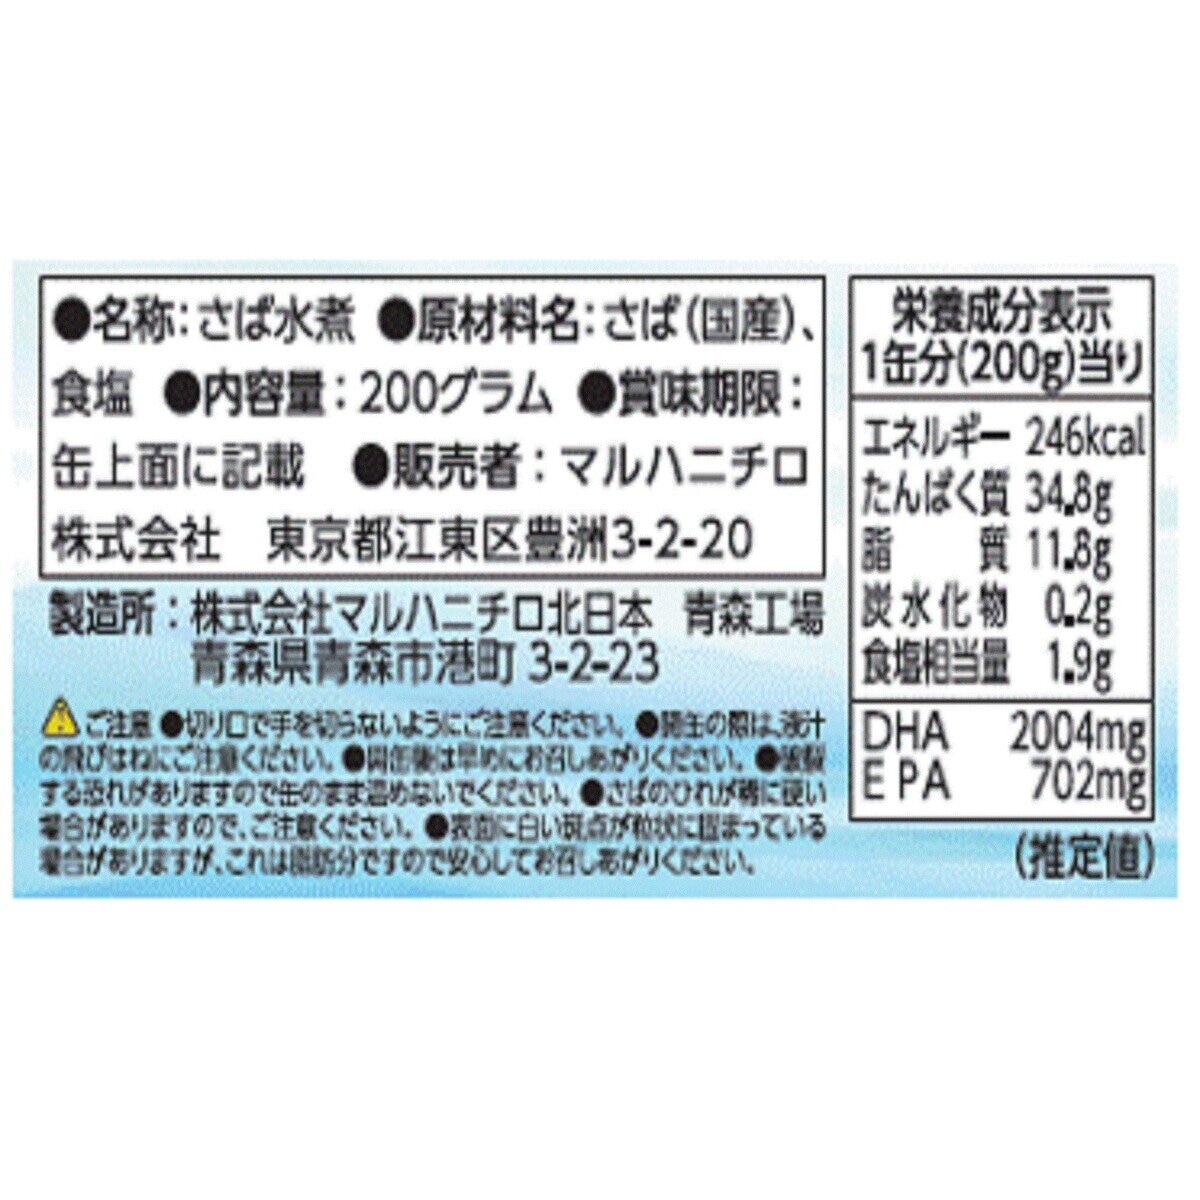 Japan　200g　さば水煮　マルハニチロ　Costco　x　6缶セット